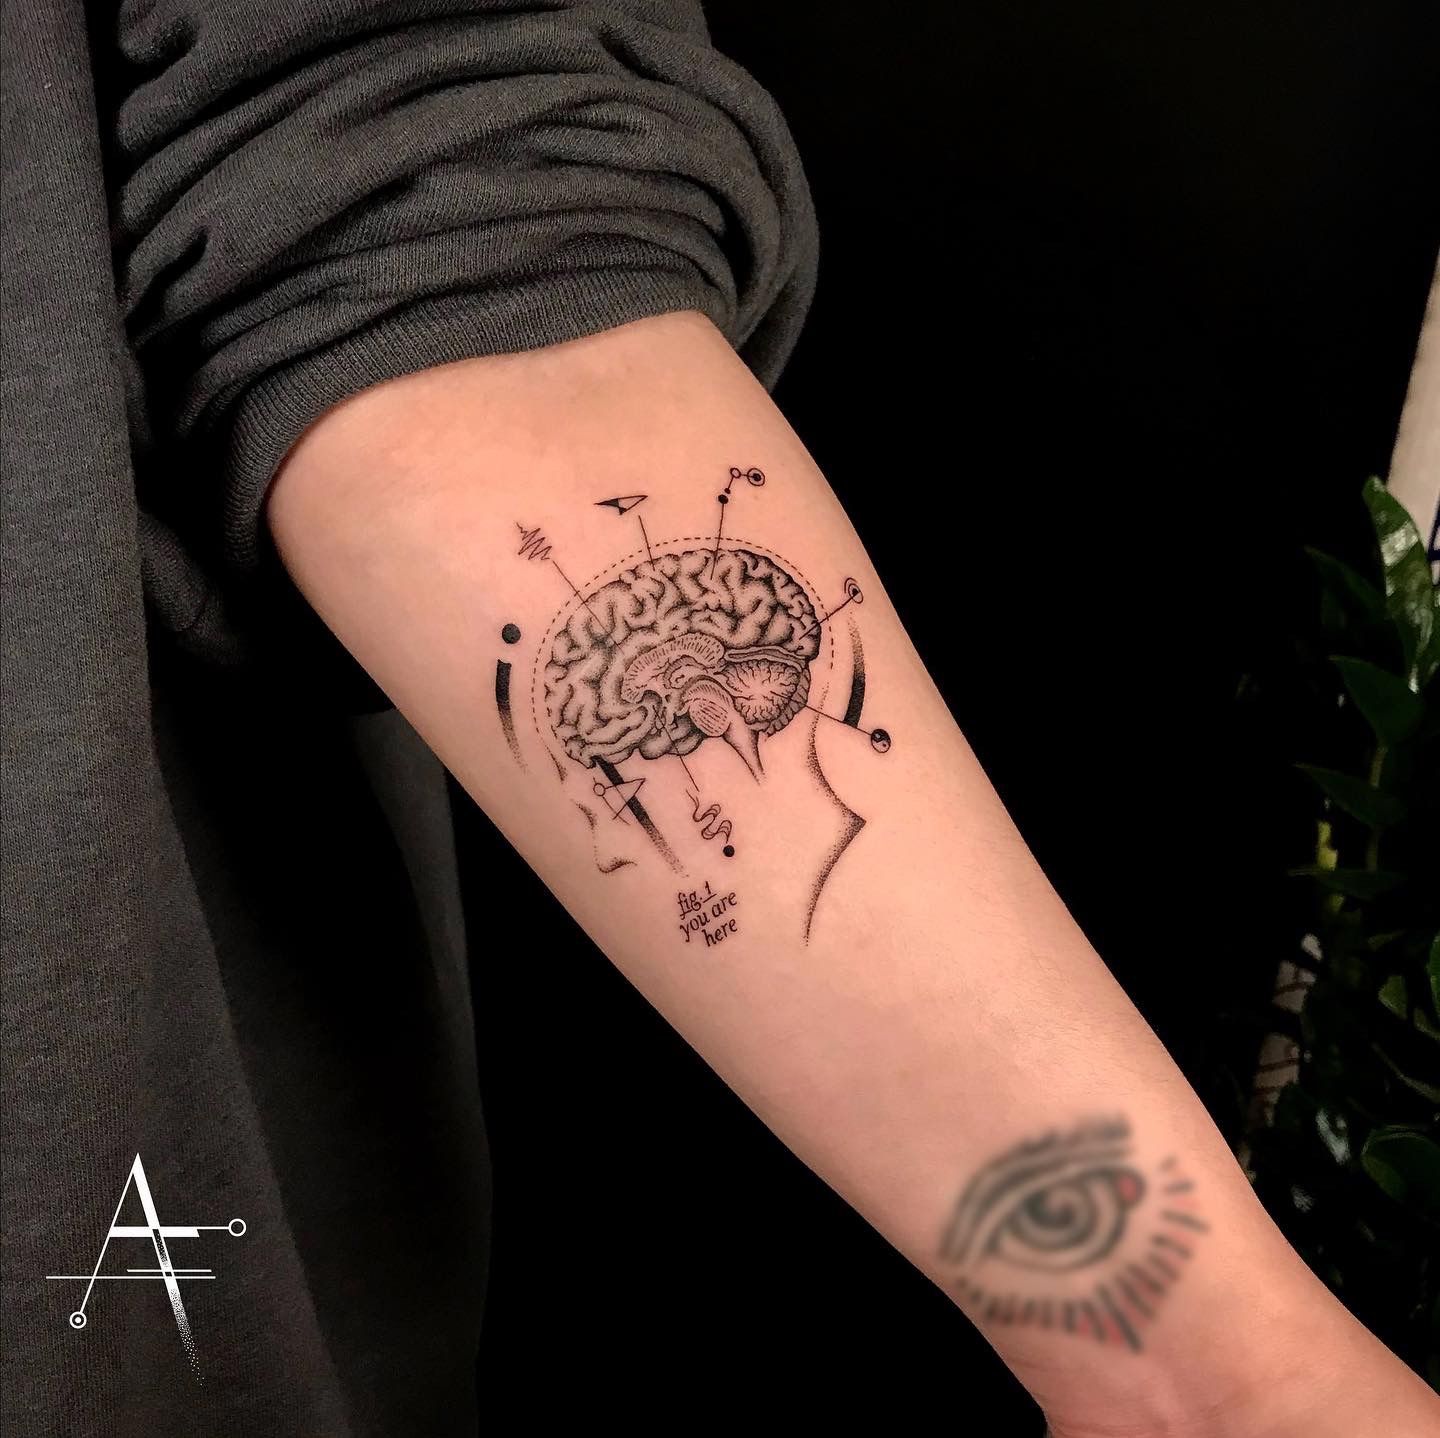 Space brain tattoo by James Templin : Tattoos